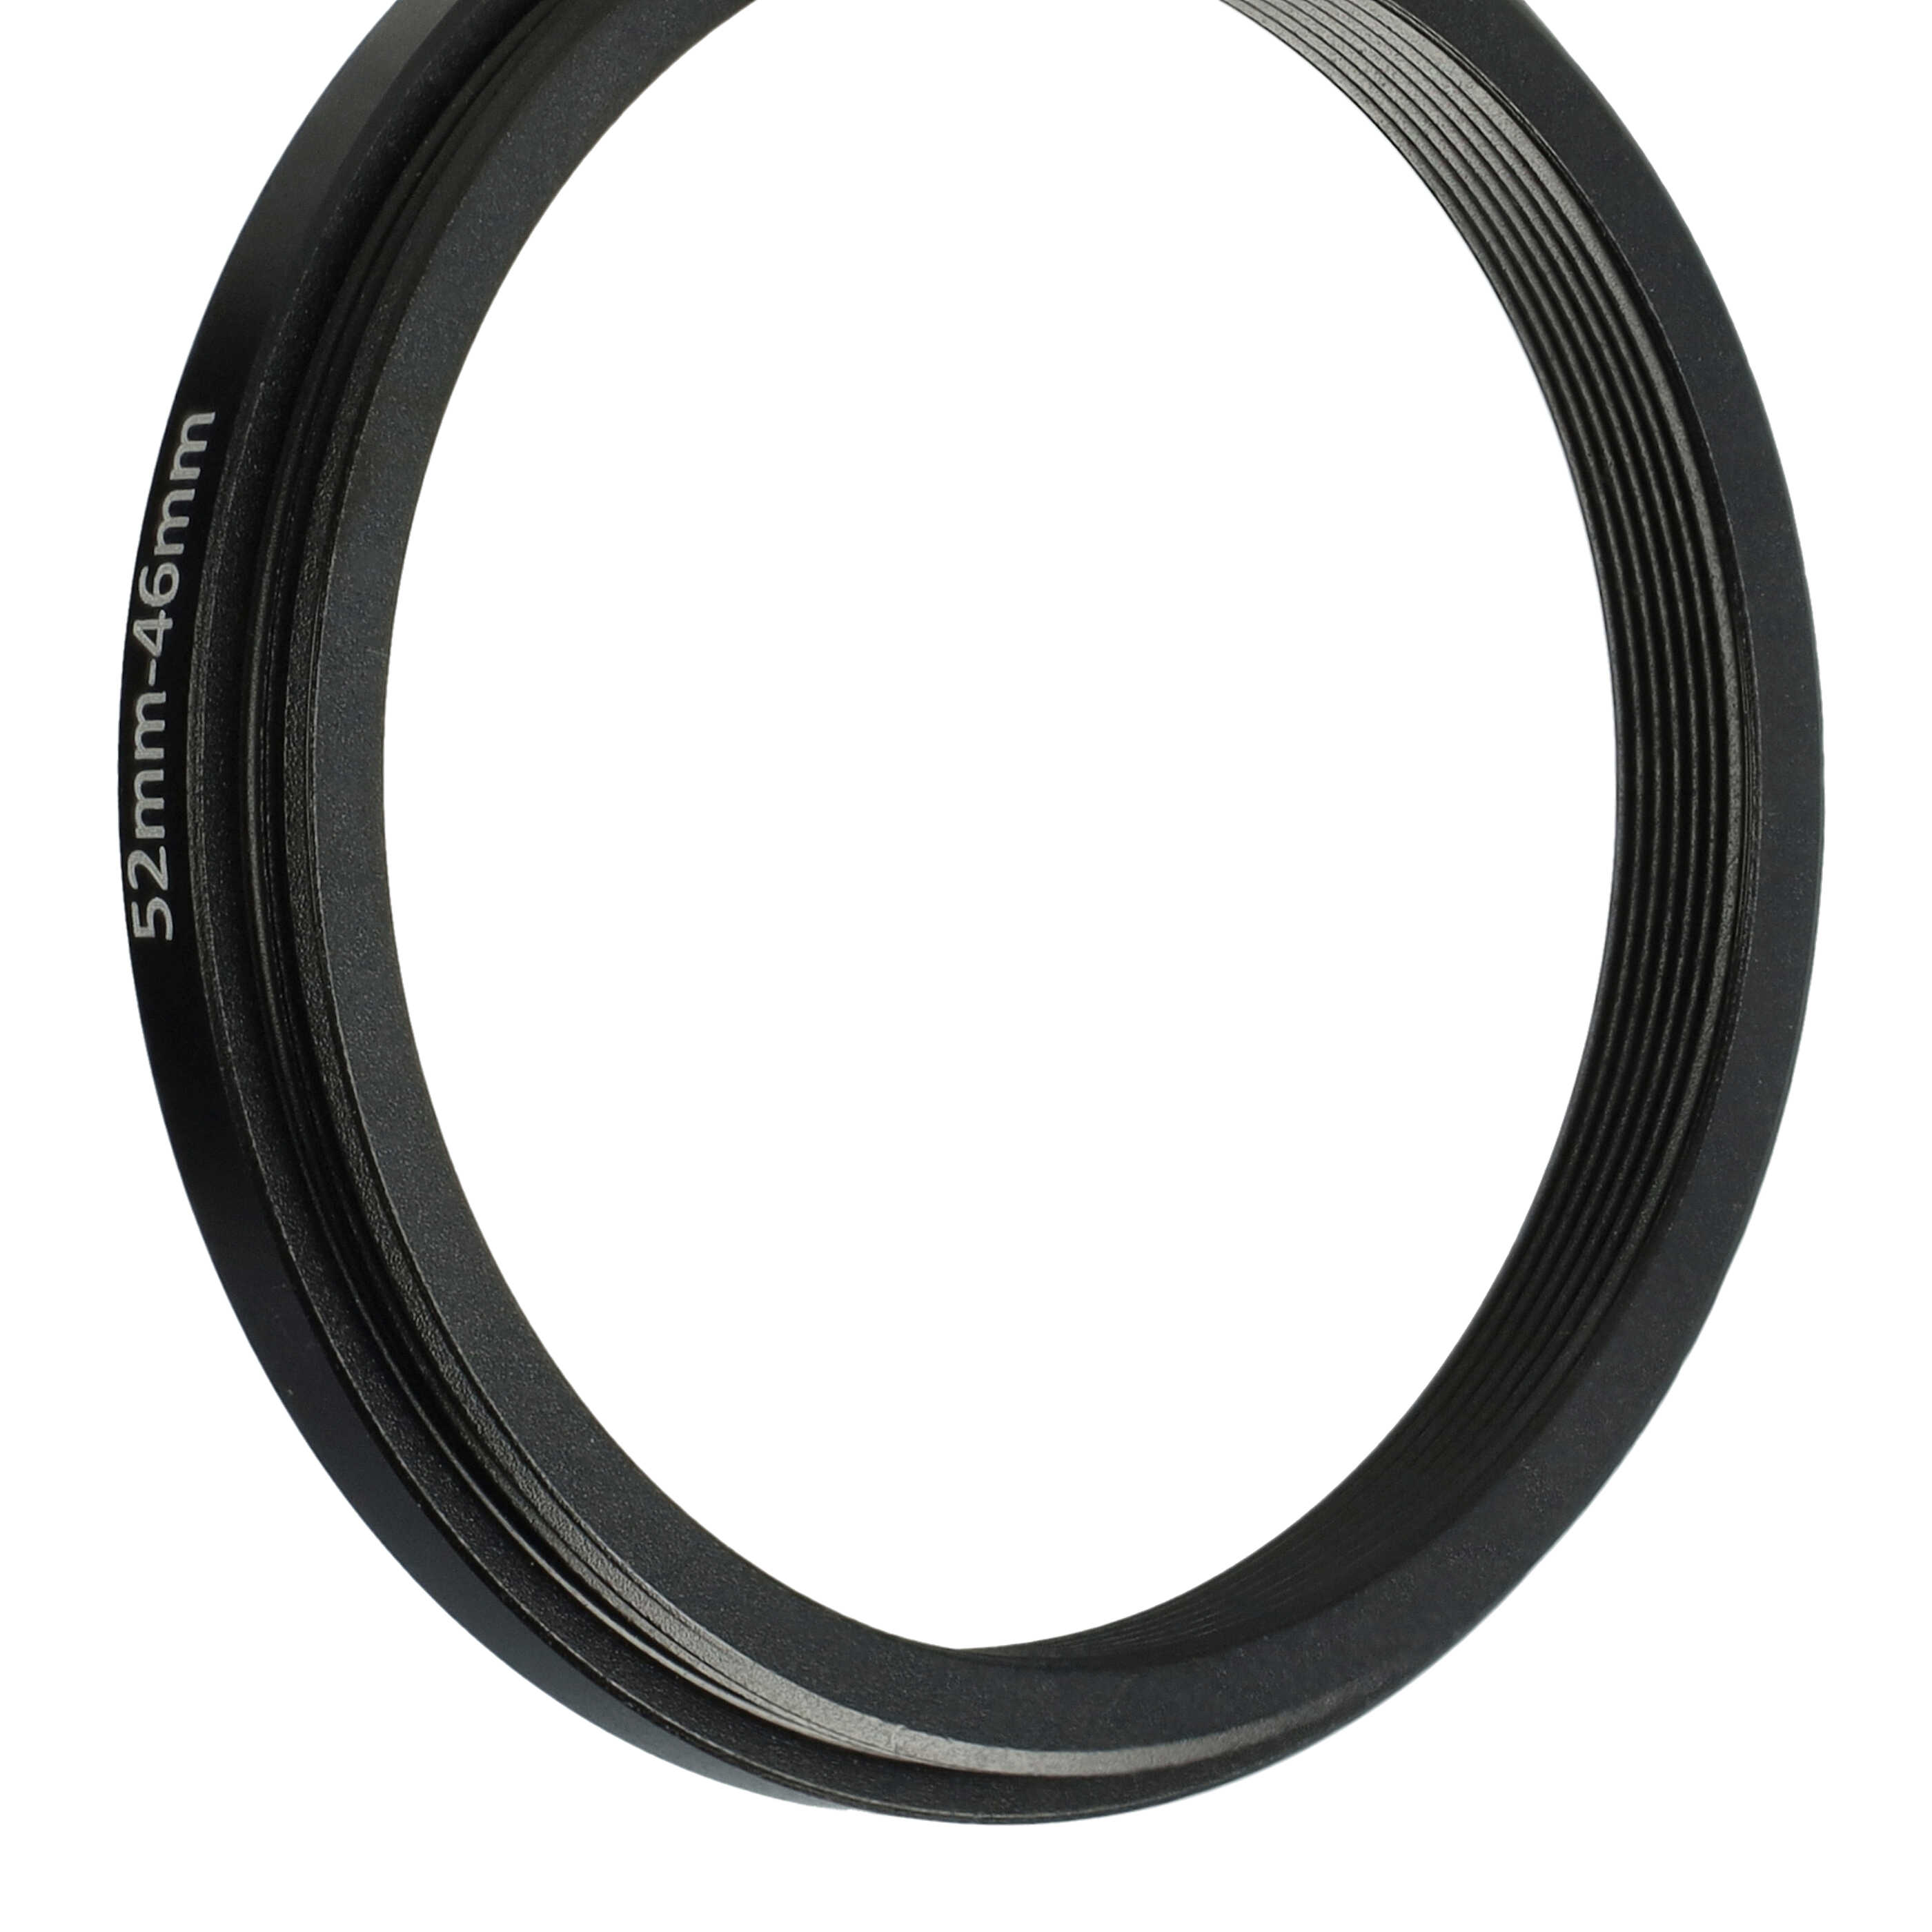 Redukcja filtrowa adapter Step-Down 52 mm - 46 mm pasująca do obiektywu - metal, czarny